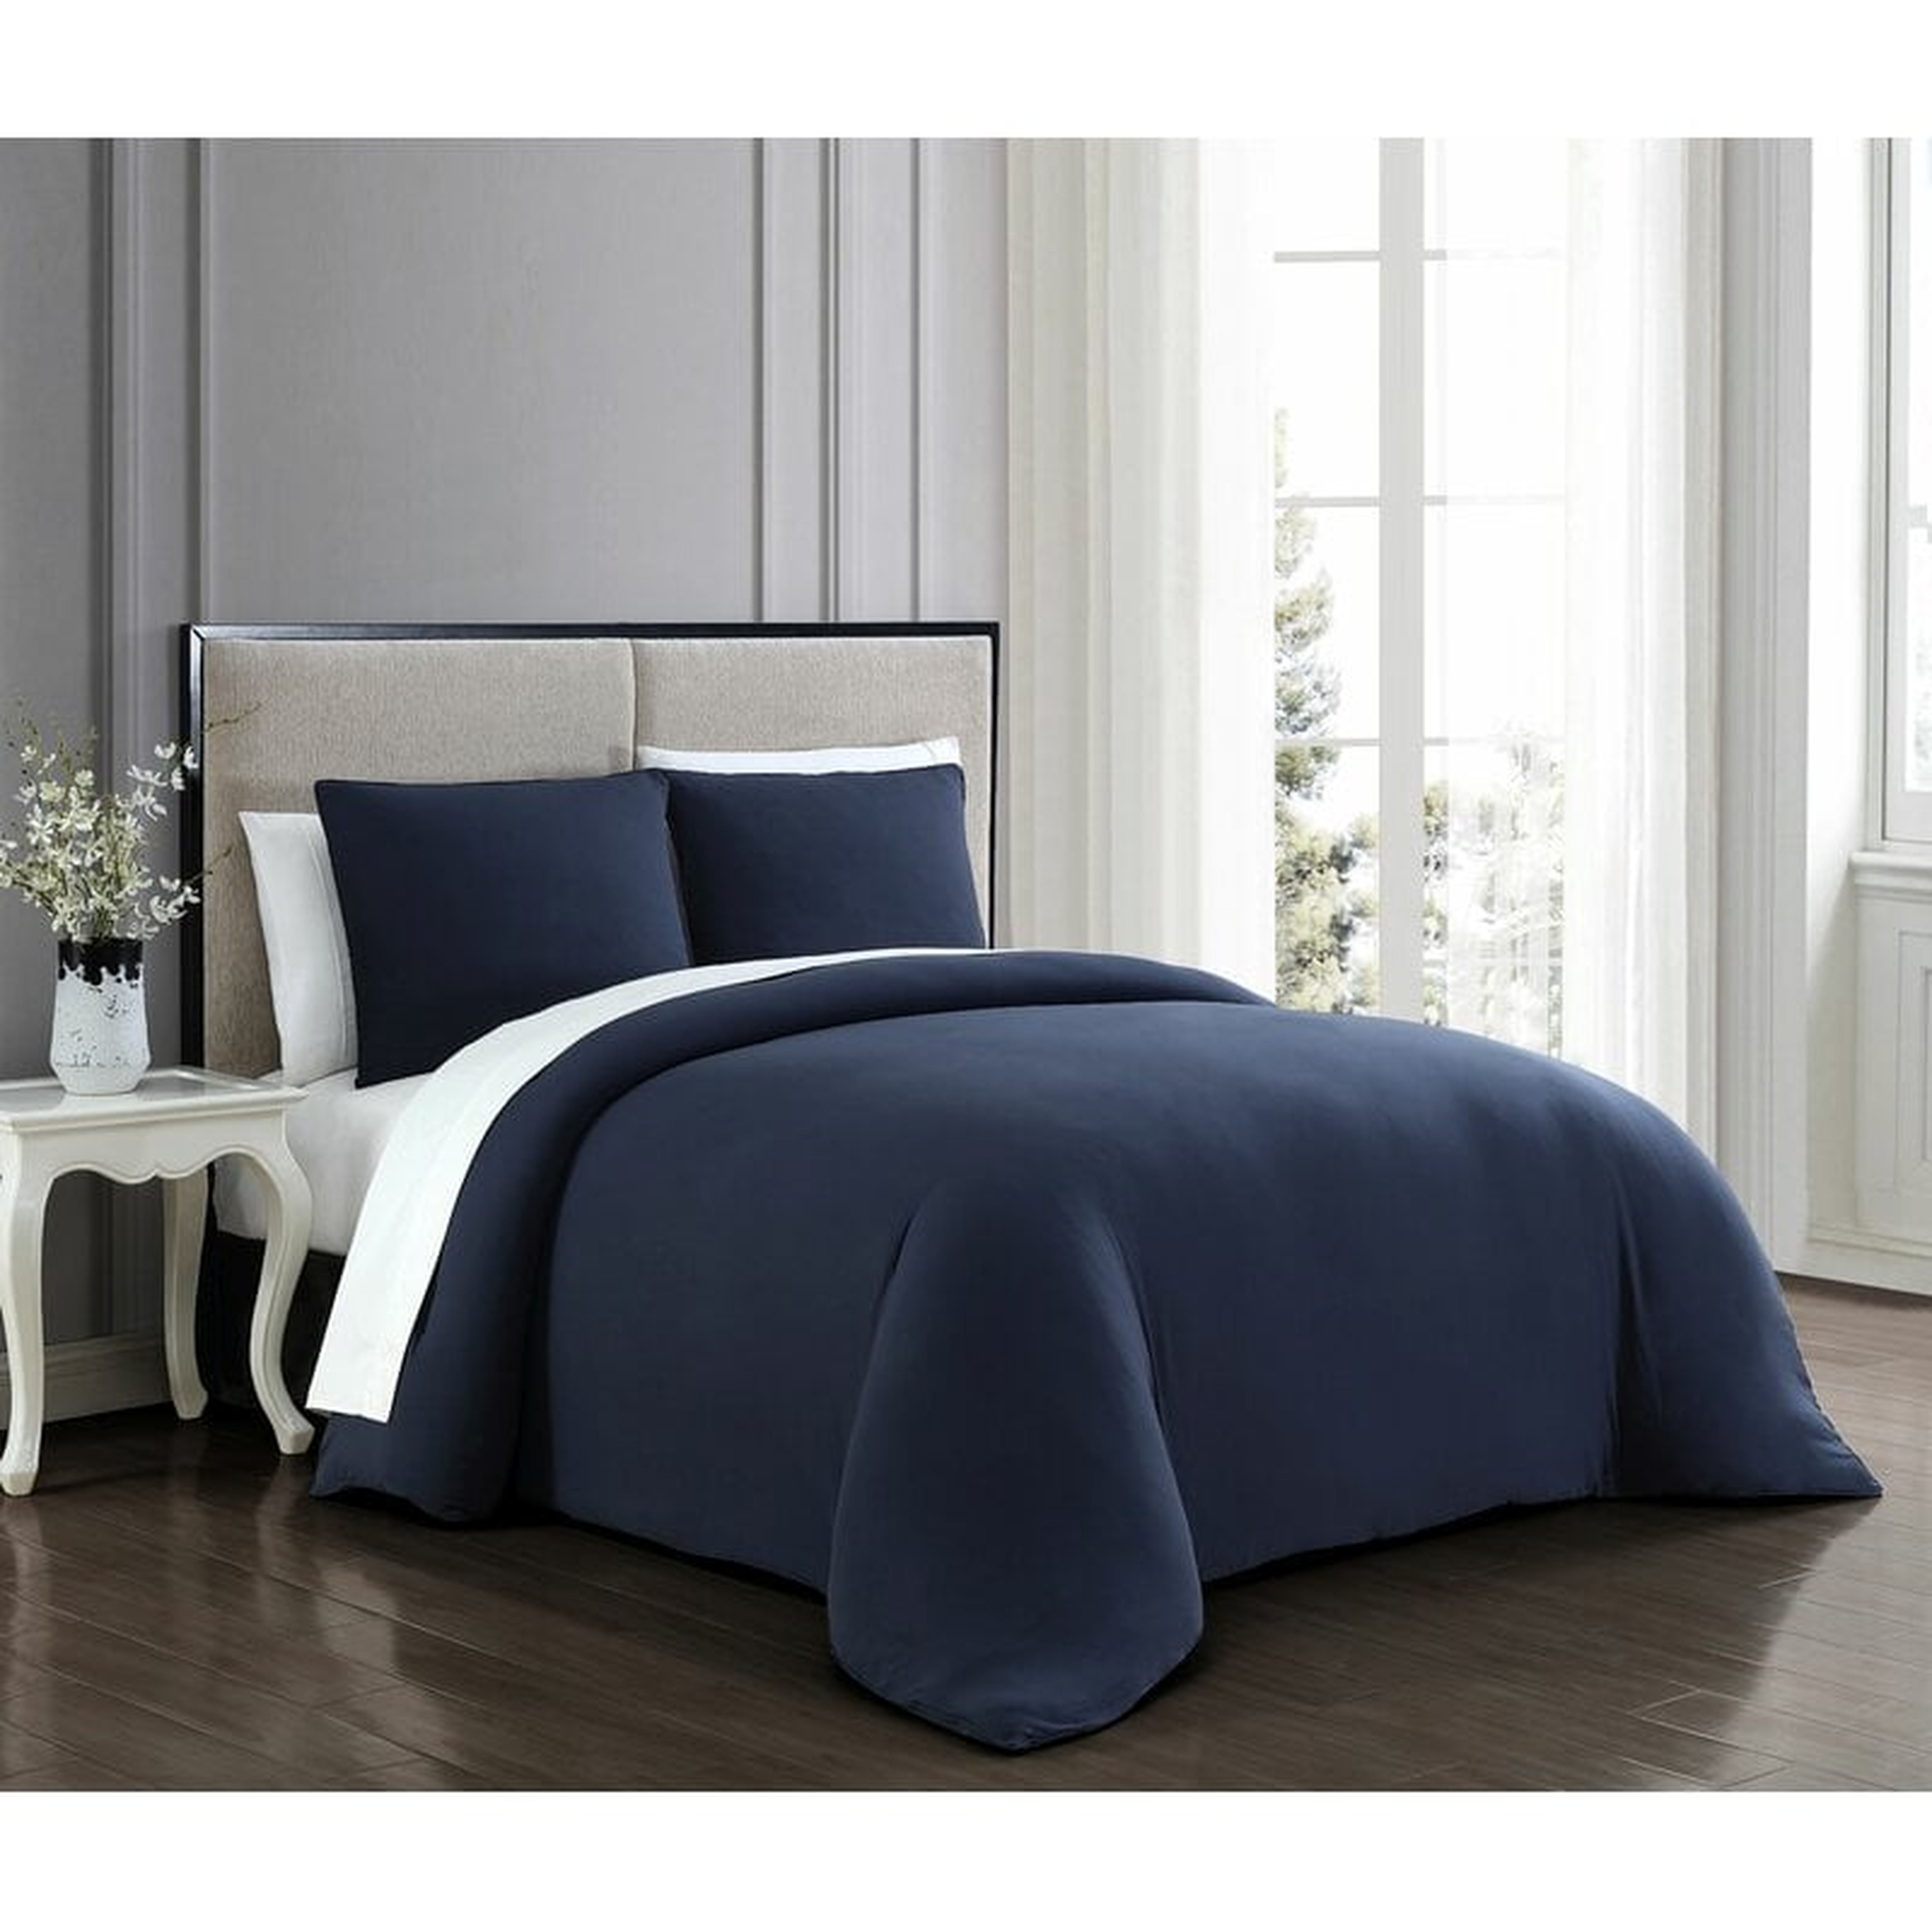 Queen Comforter + 2 Shams Navy Lemoine Comforter Set - Wayfair